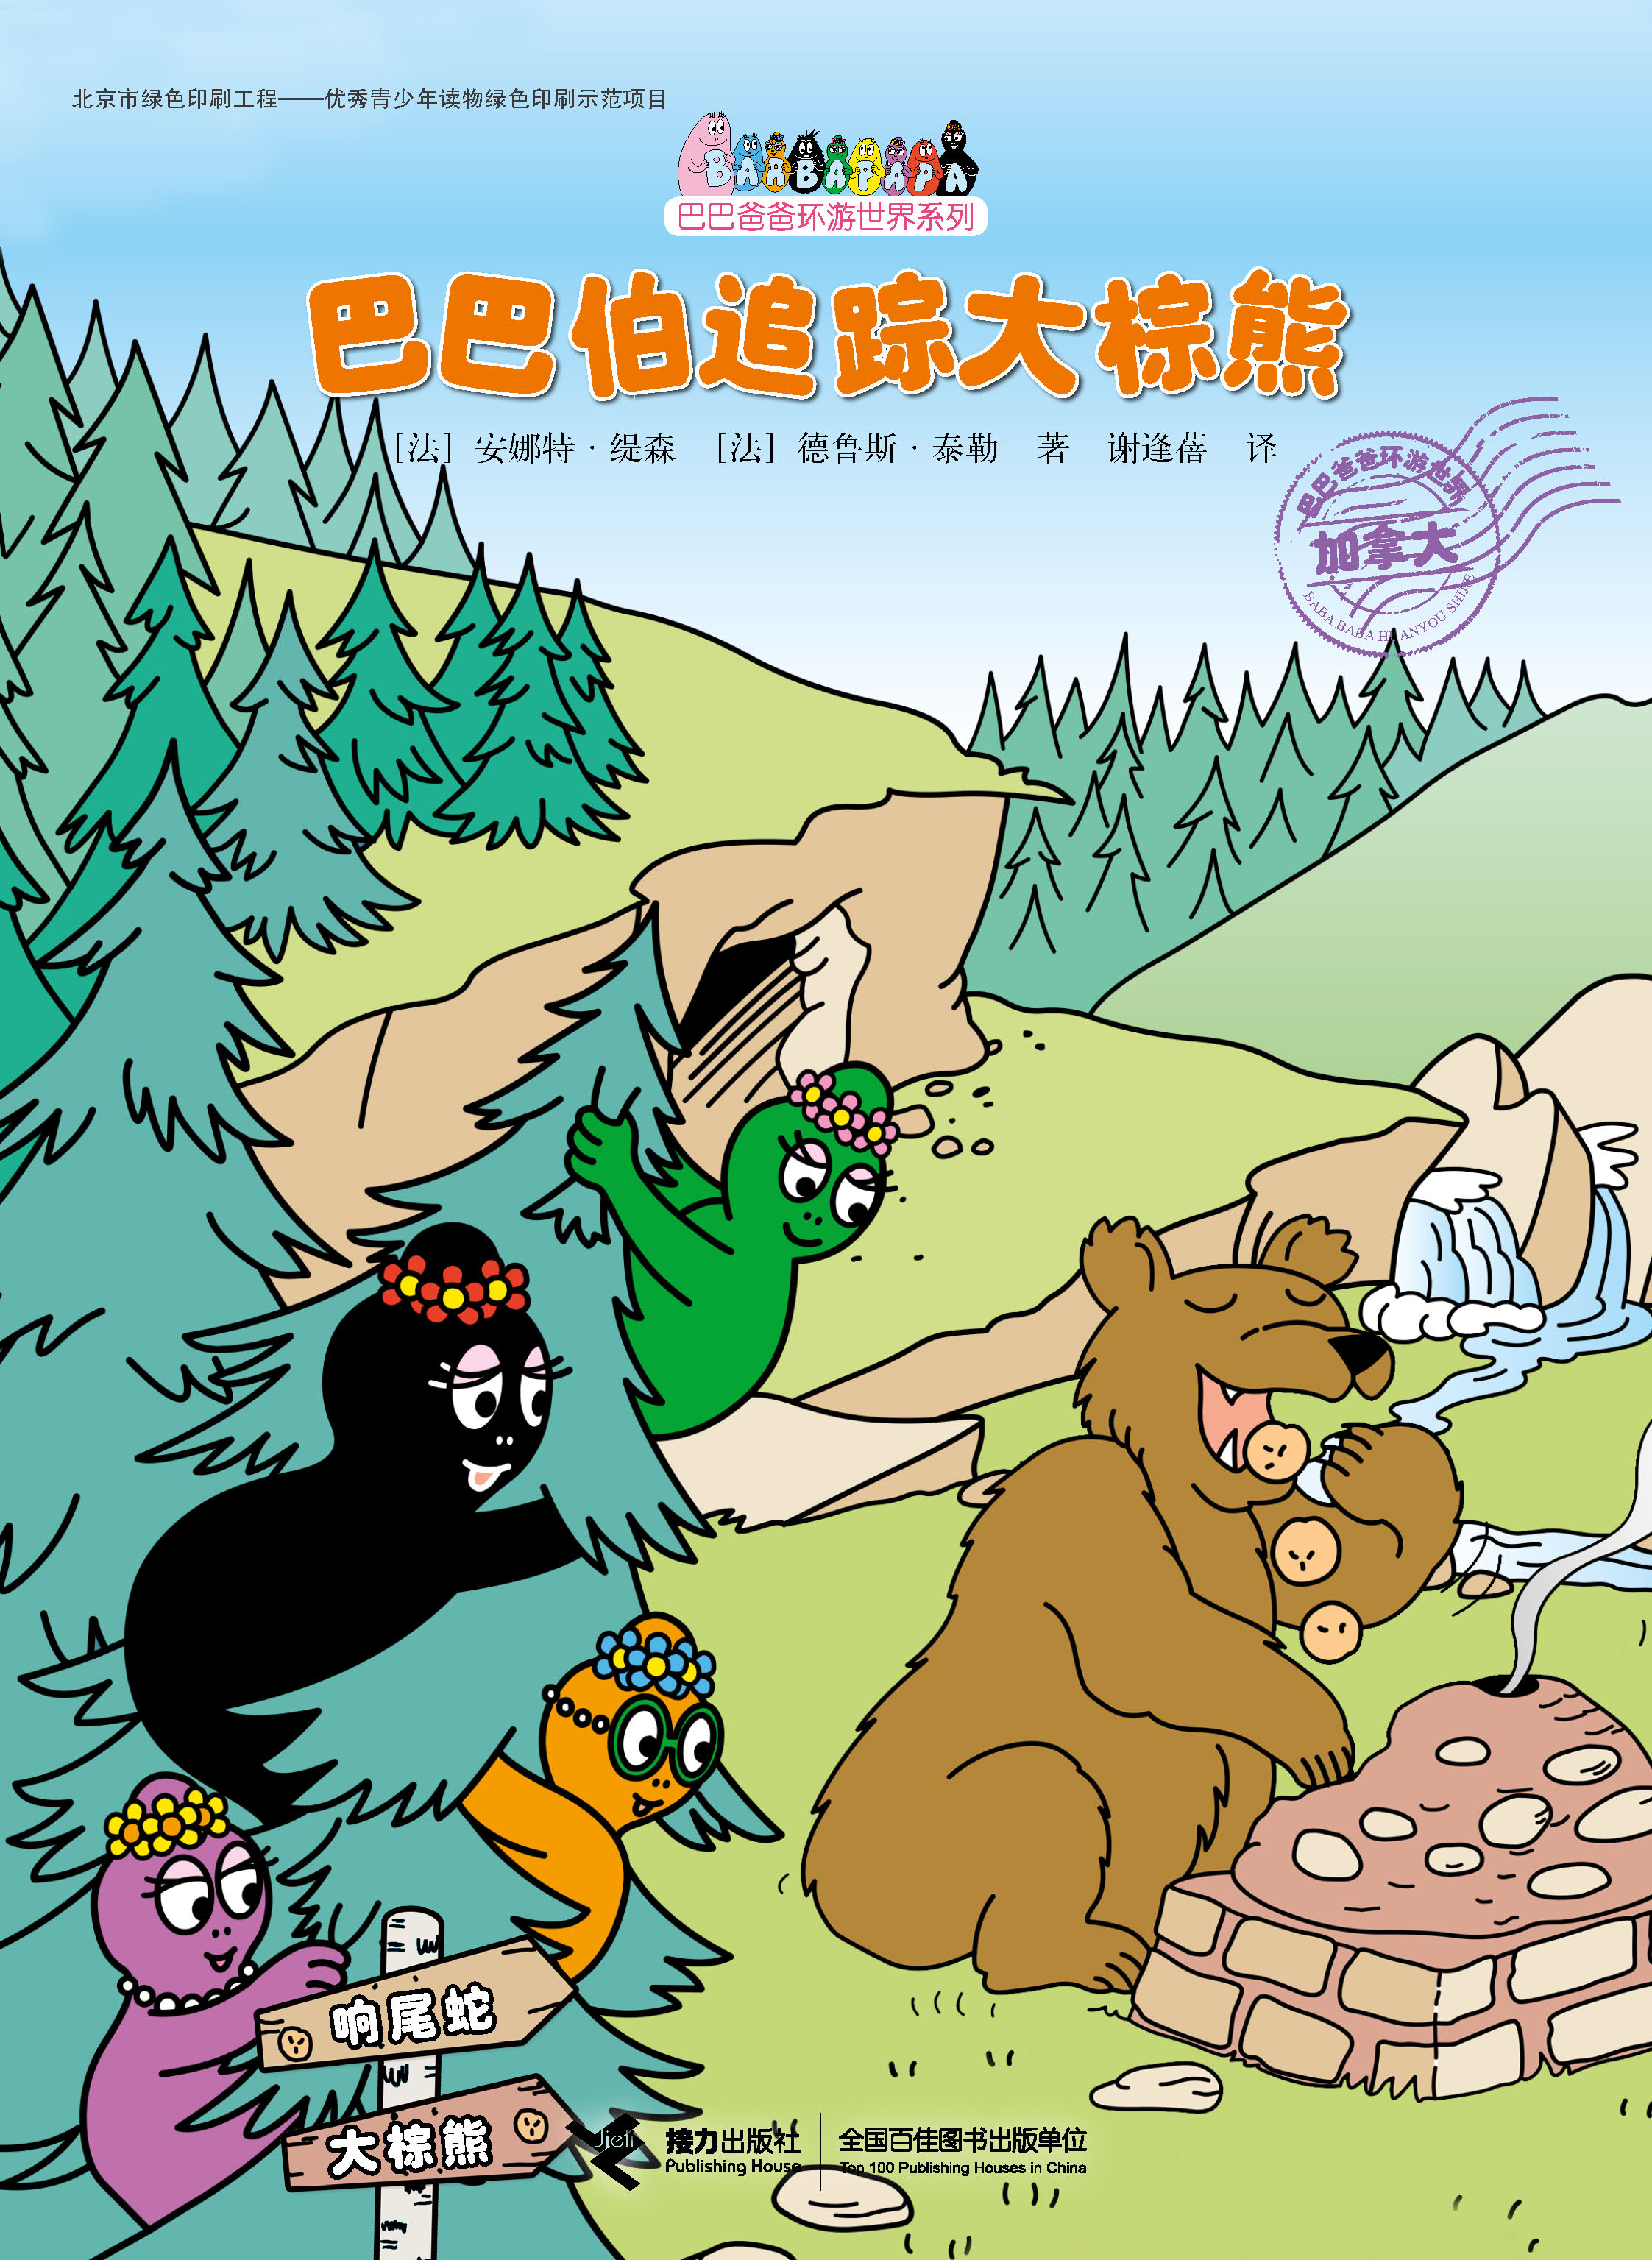 巴巴爸爸环游世界系列:巴巴伯追踪大棕熊